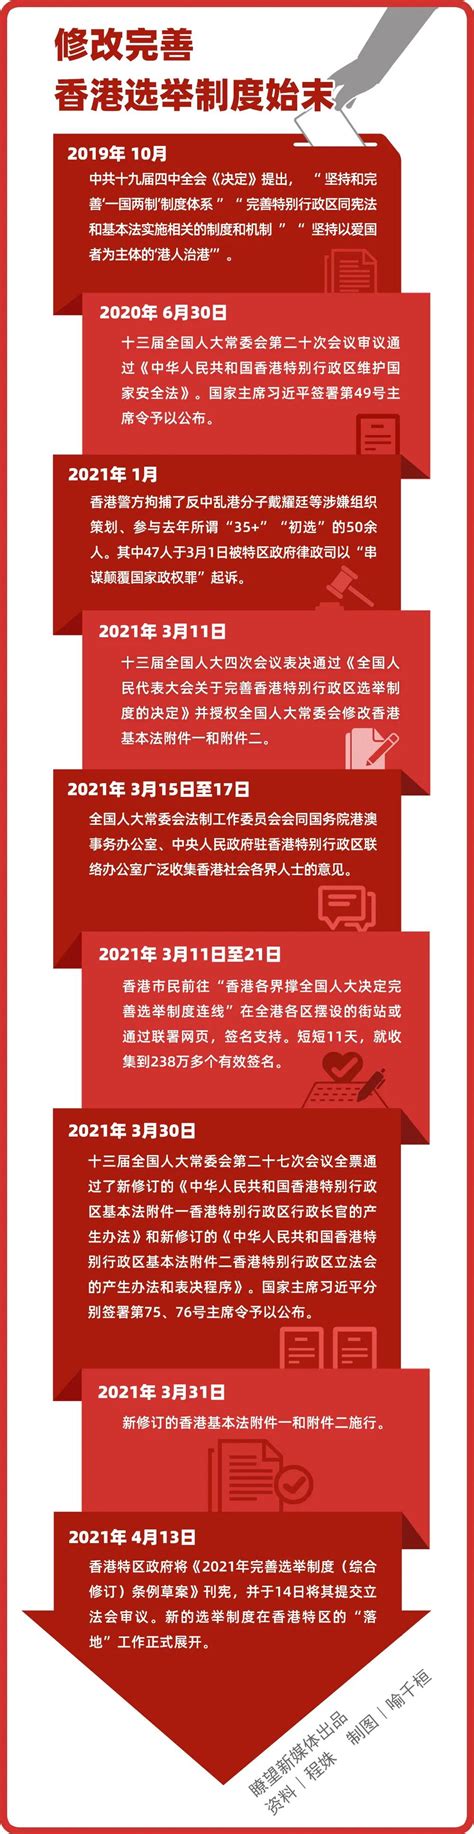 全面落实“爱国者治港”：修改完善香港选举制度始末 - 西部网（陕西新闻网）